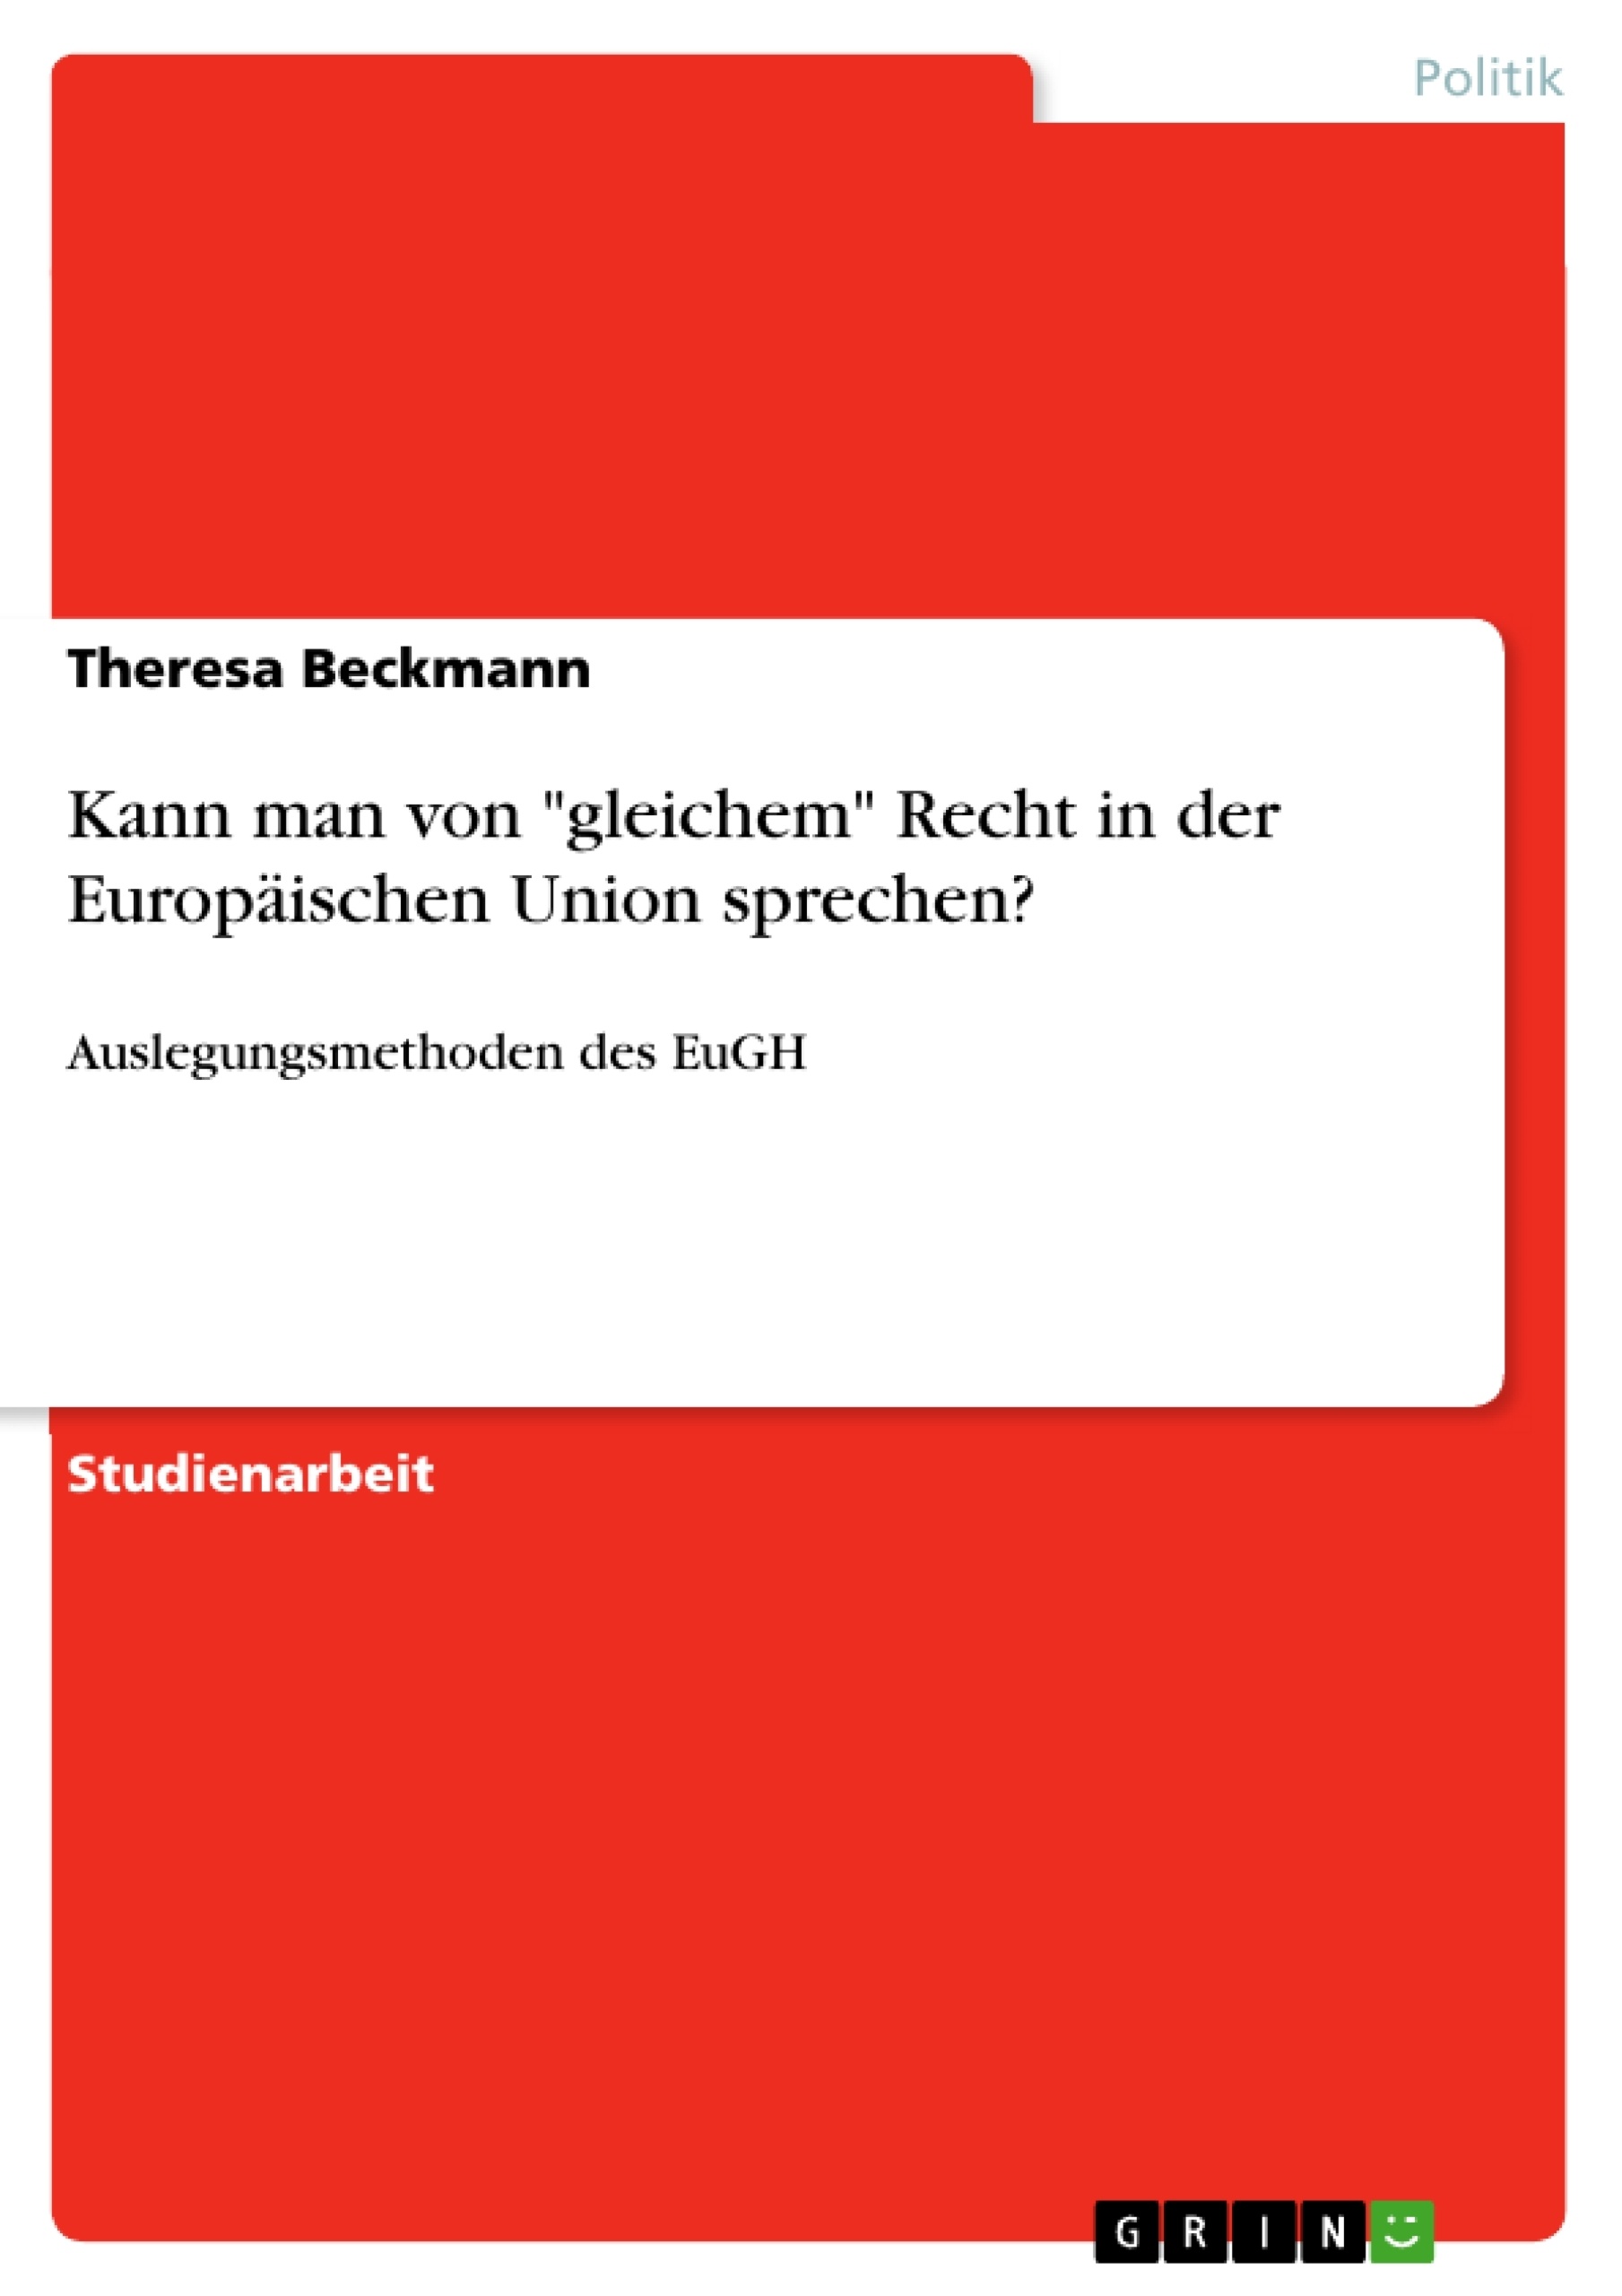 Title: Kann man von "gleichem" Recht in der Europäischen Union sprechen?